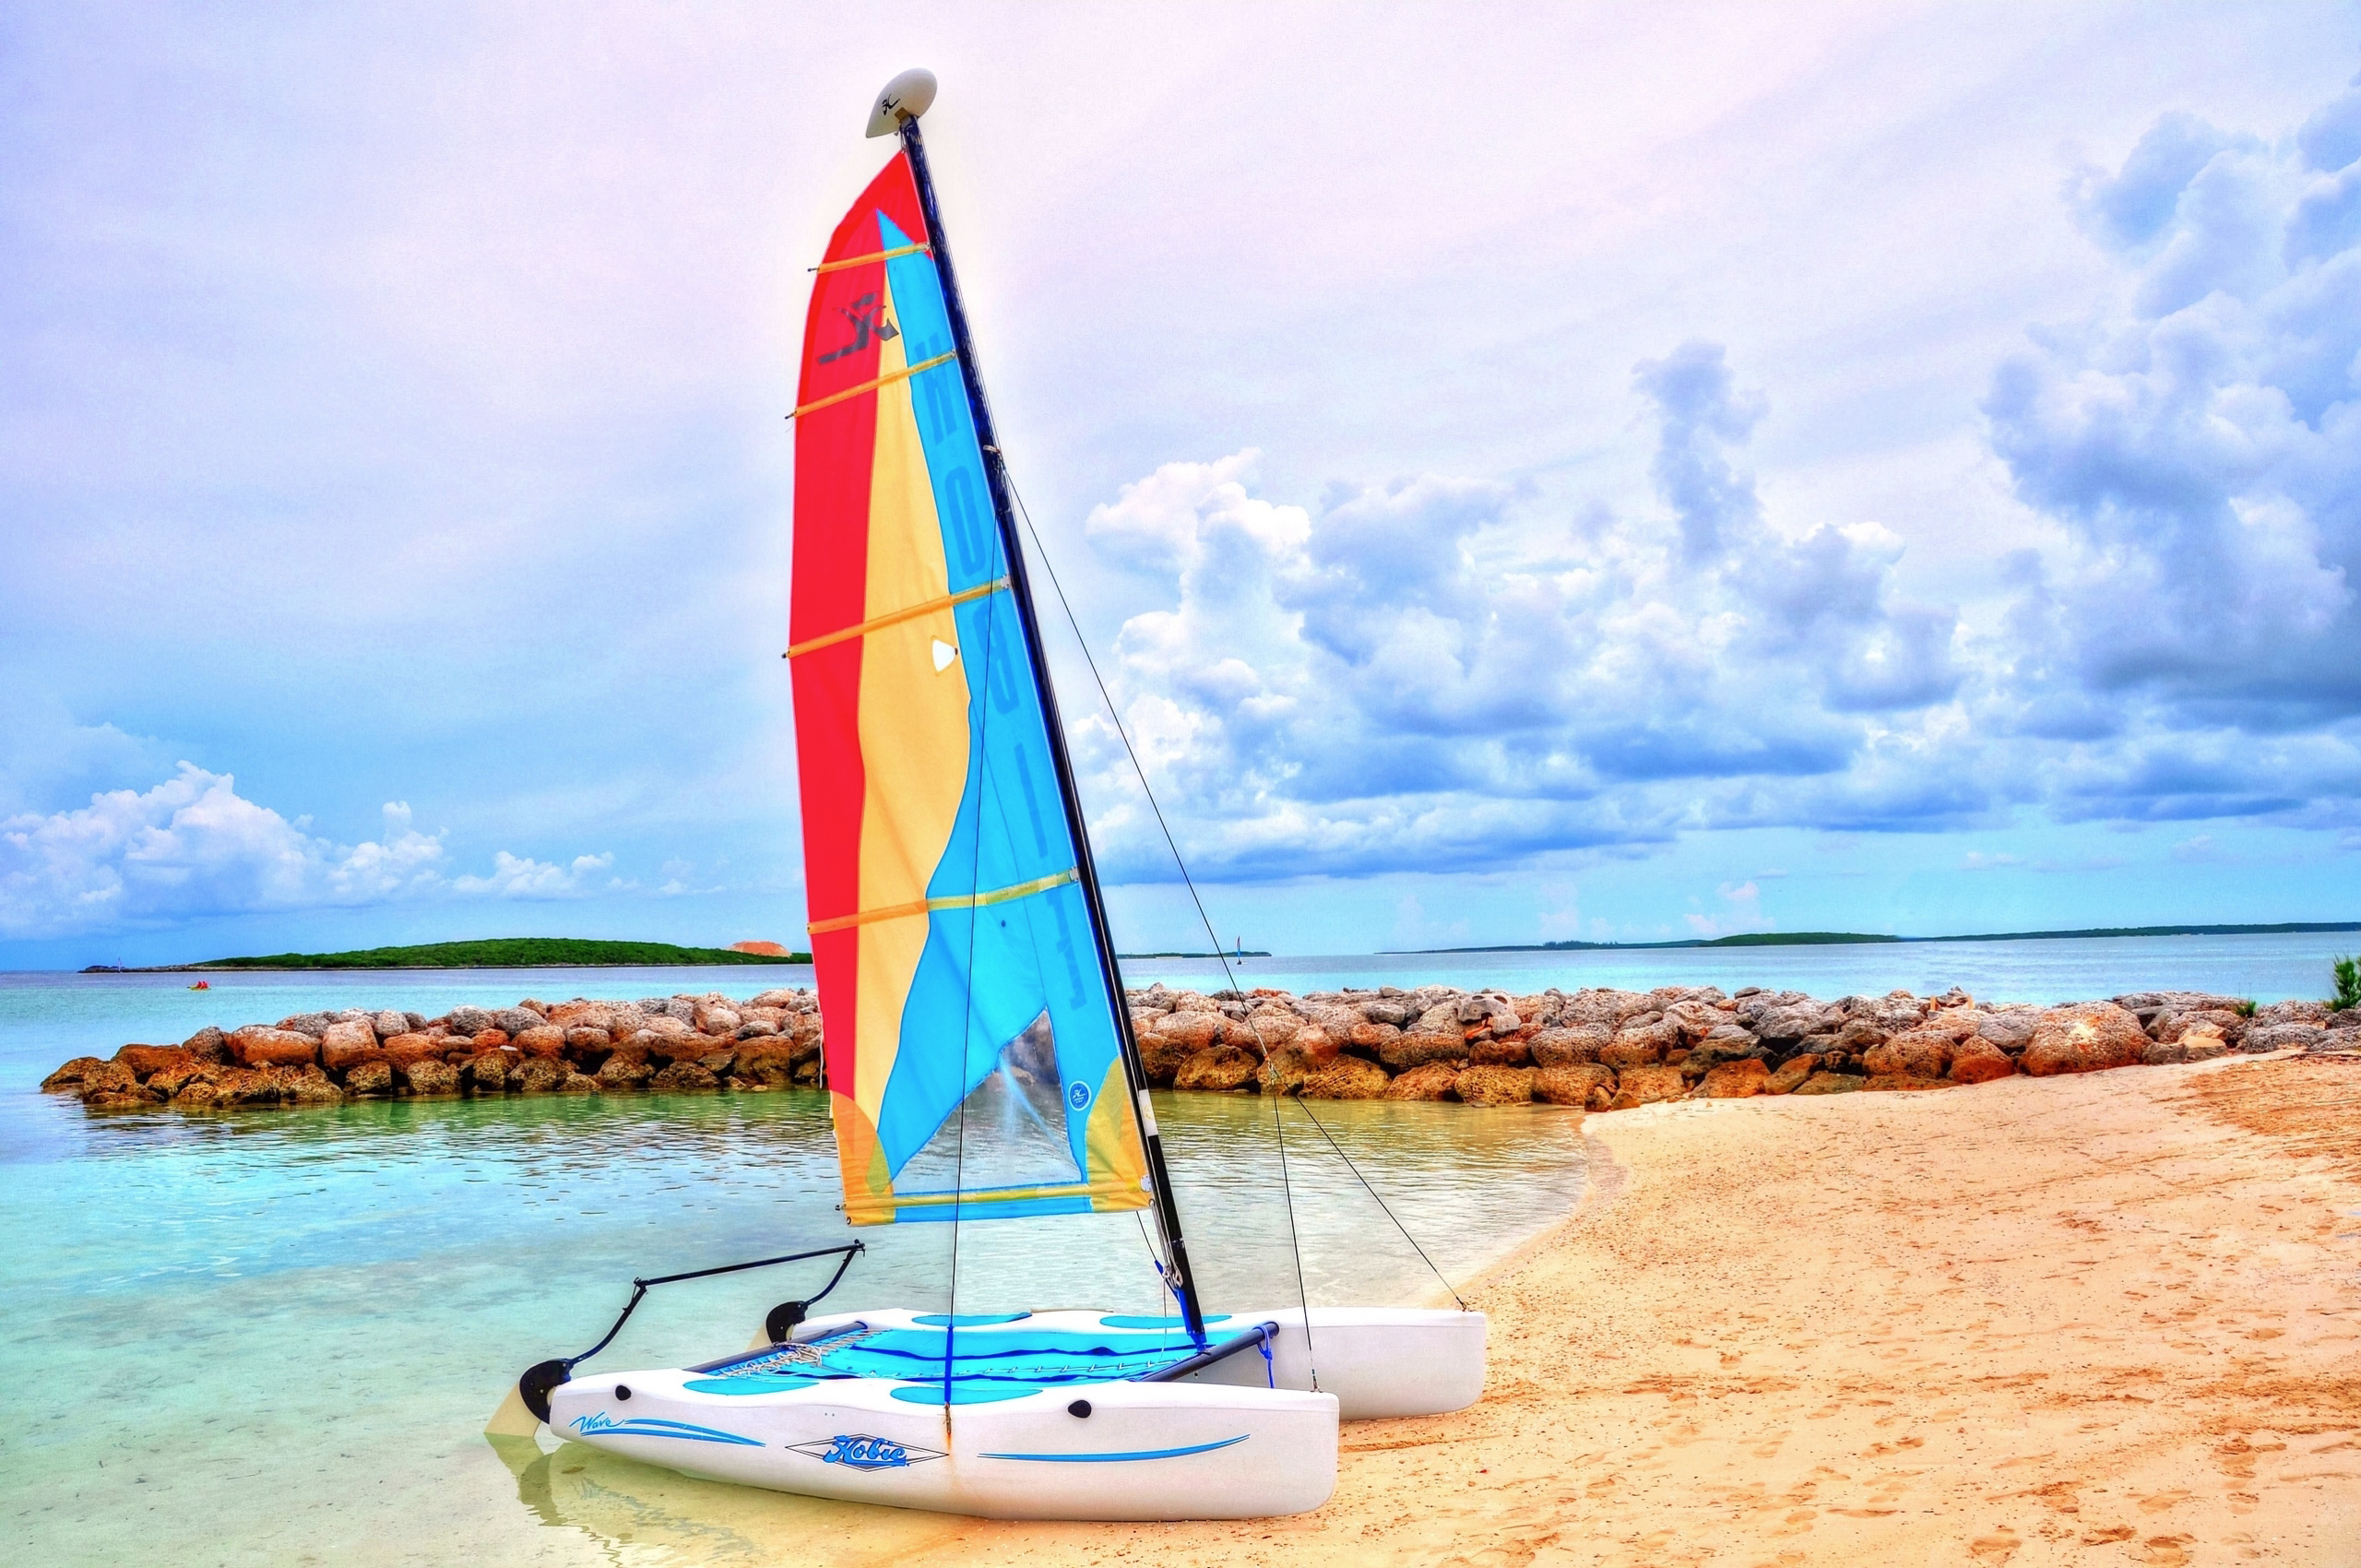 Wallpapers beach catamaran yacht on the desktop